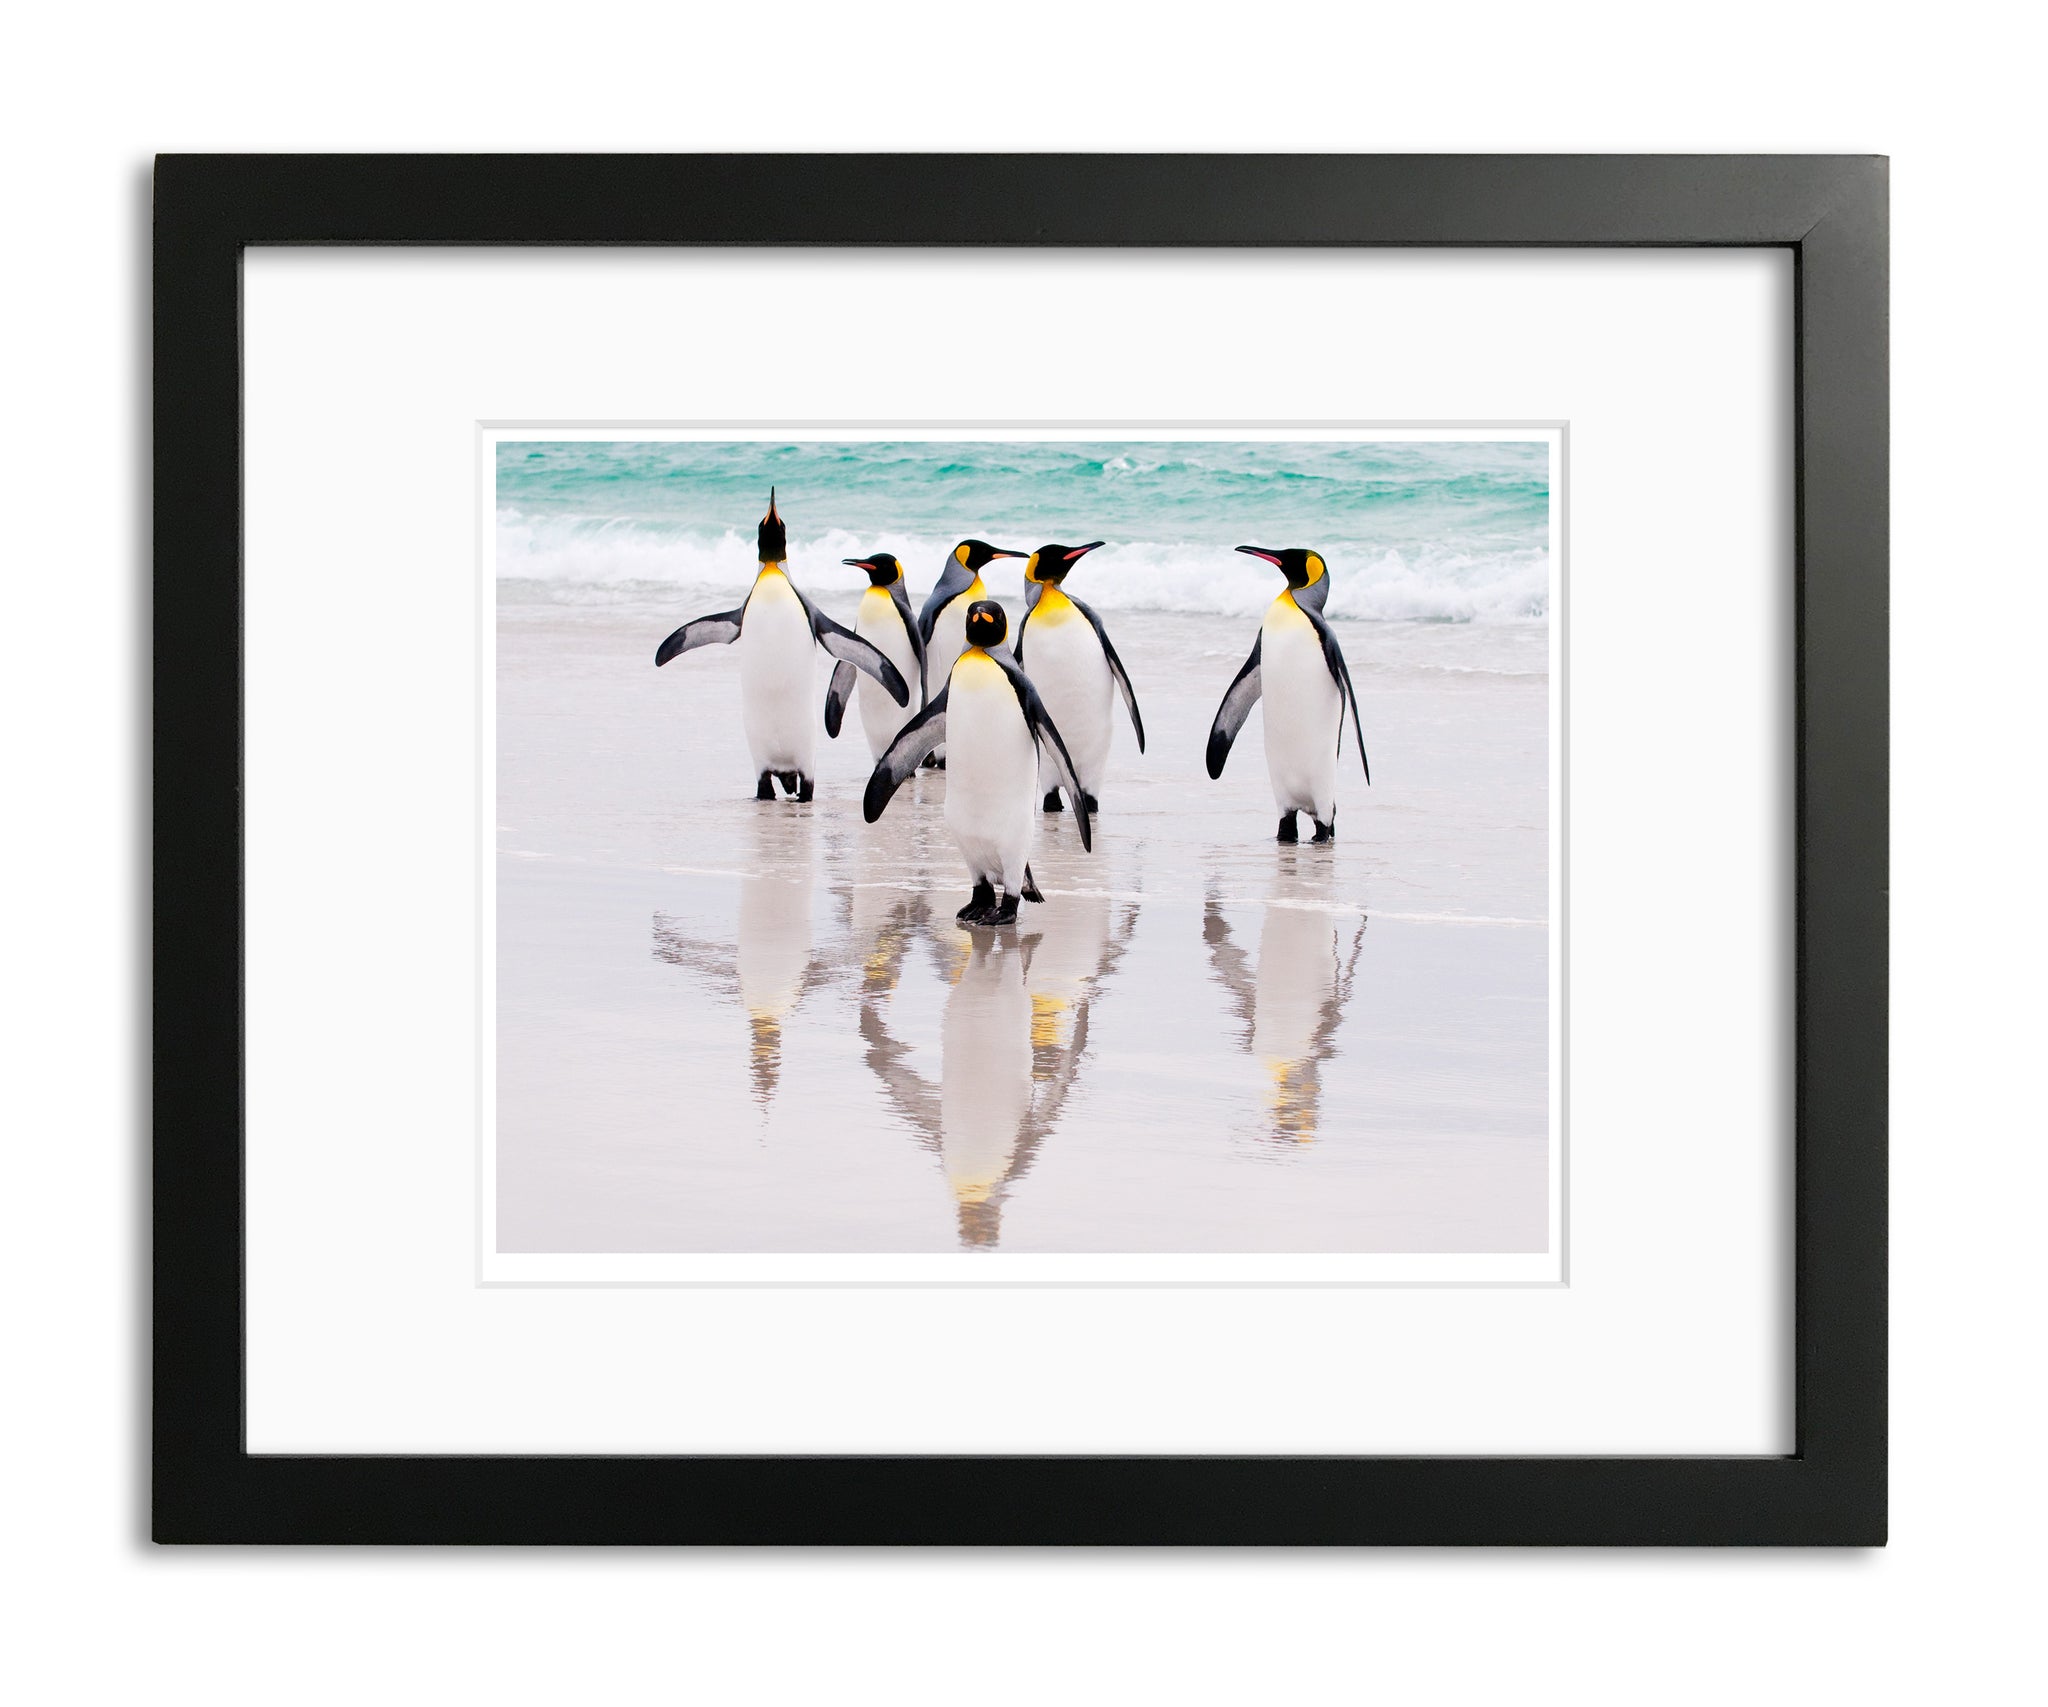 King Penguins, Falkland Islands, by Robert Ross